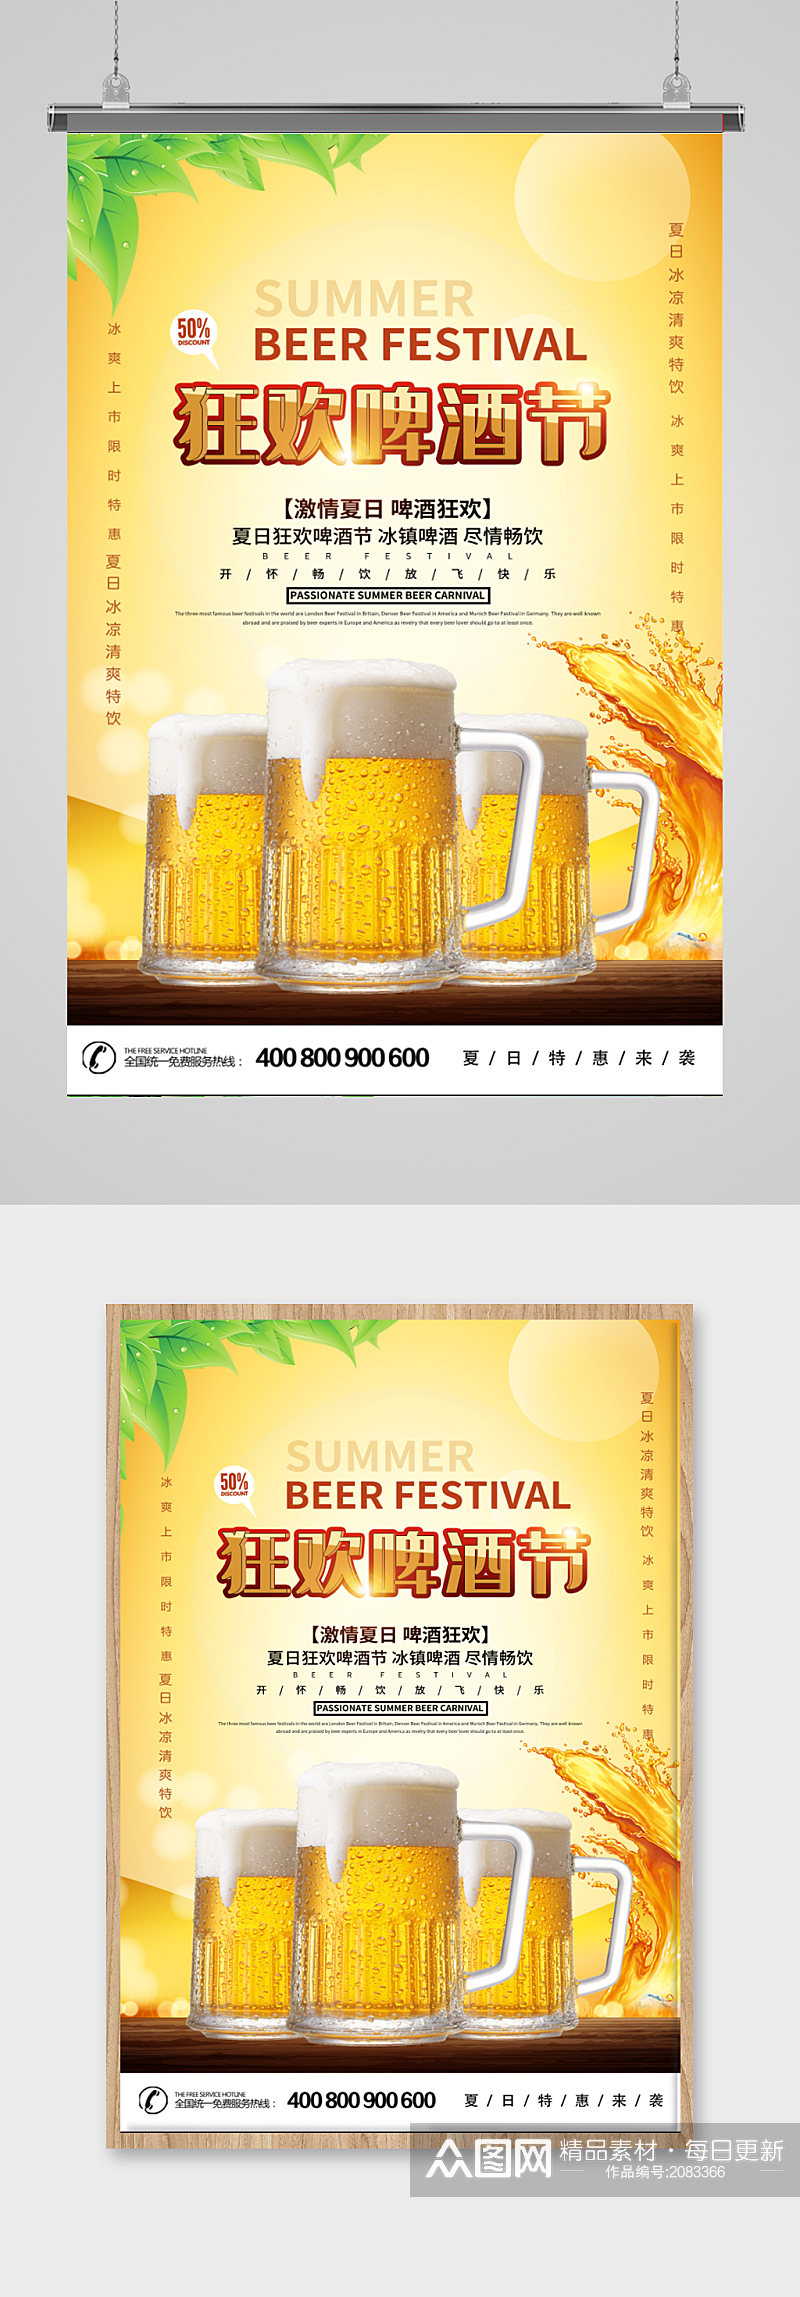 狂欢啤酒节宣传促销海报素材